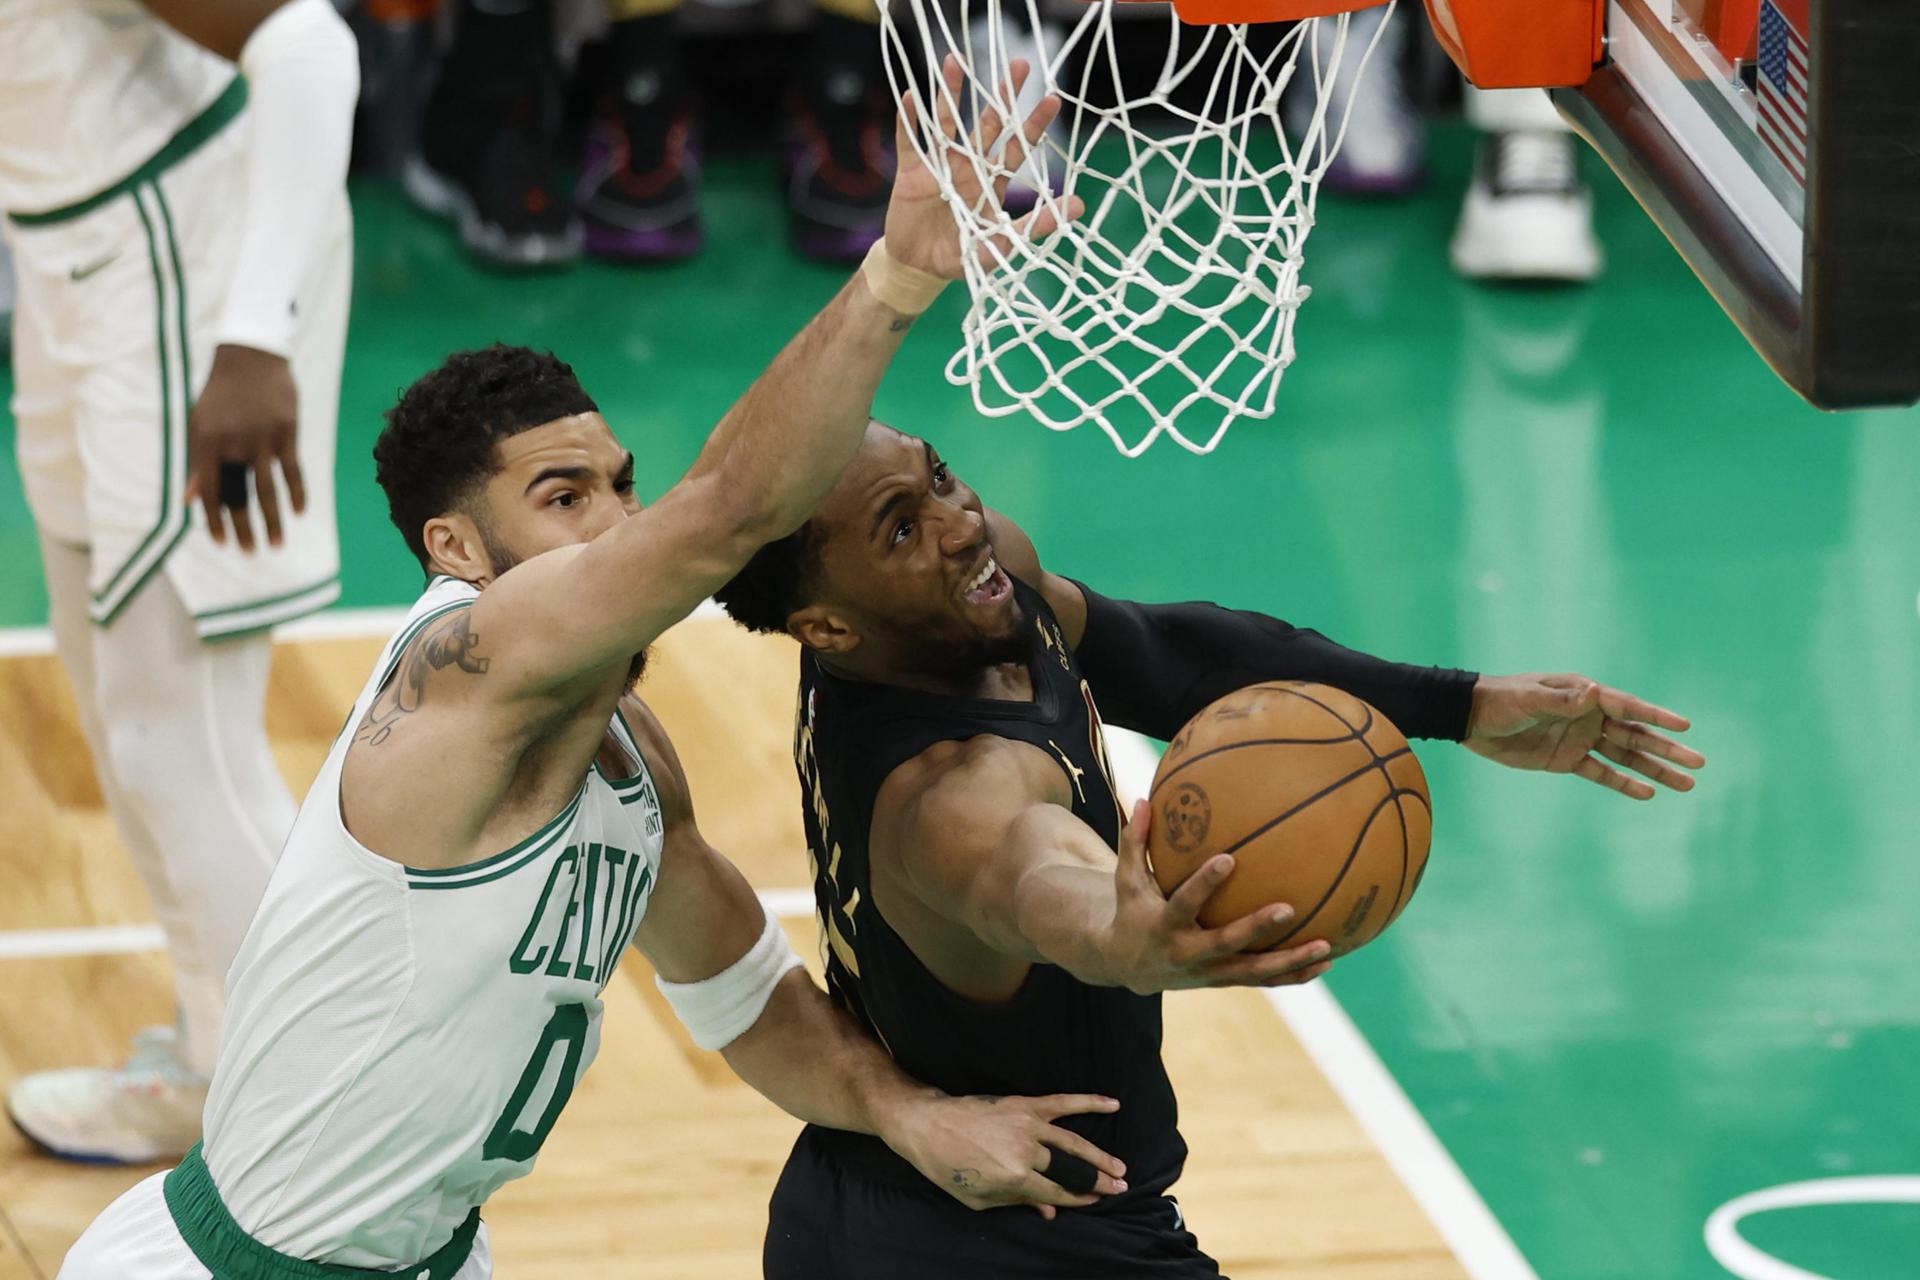 Donovan Mitchell (d) de los Cleveland Cavaliers lanza a la cesta con la marca de Jayson Tatum (i) de los Boston Celtics durante un partido de la NBA. EFE/EPA/CJ GUNTHER